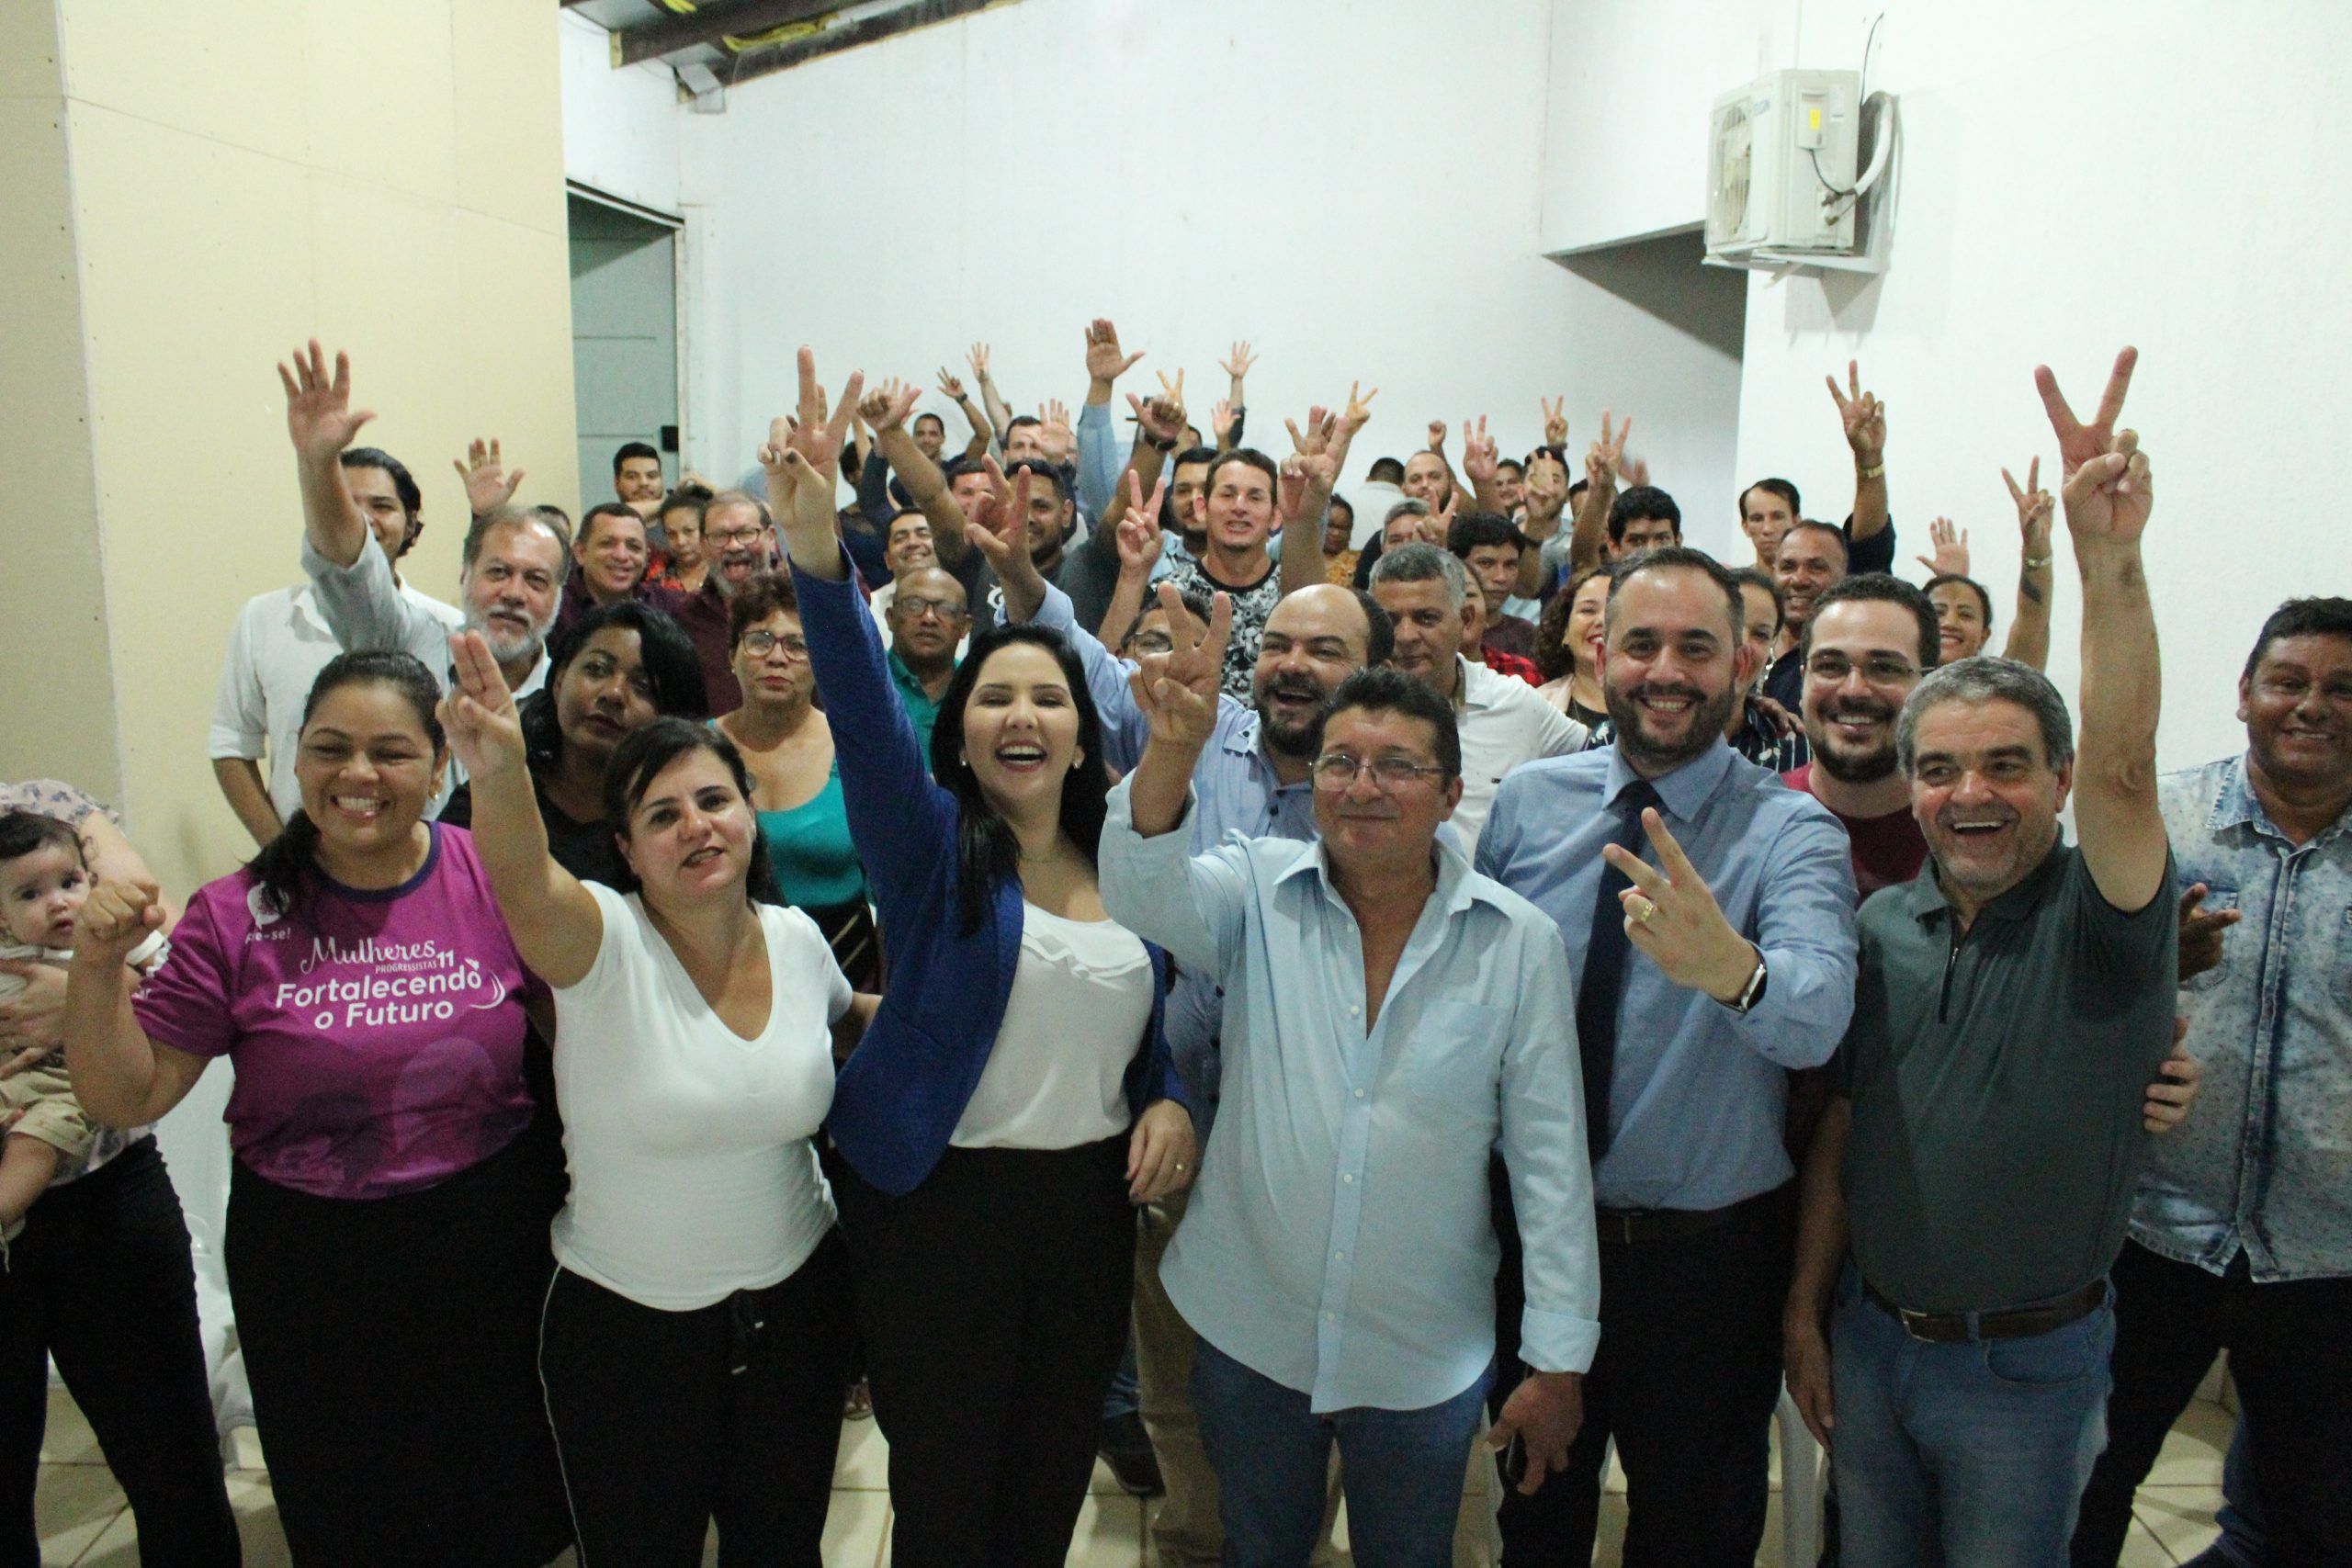 Progressistas reúne lideranças para anúncio da pré-candidatura de Cristiane Lopes à prefeitura de Porto Velho - eleicoes - progressistas rondonia